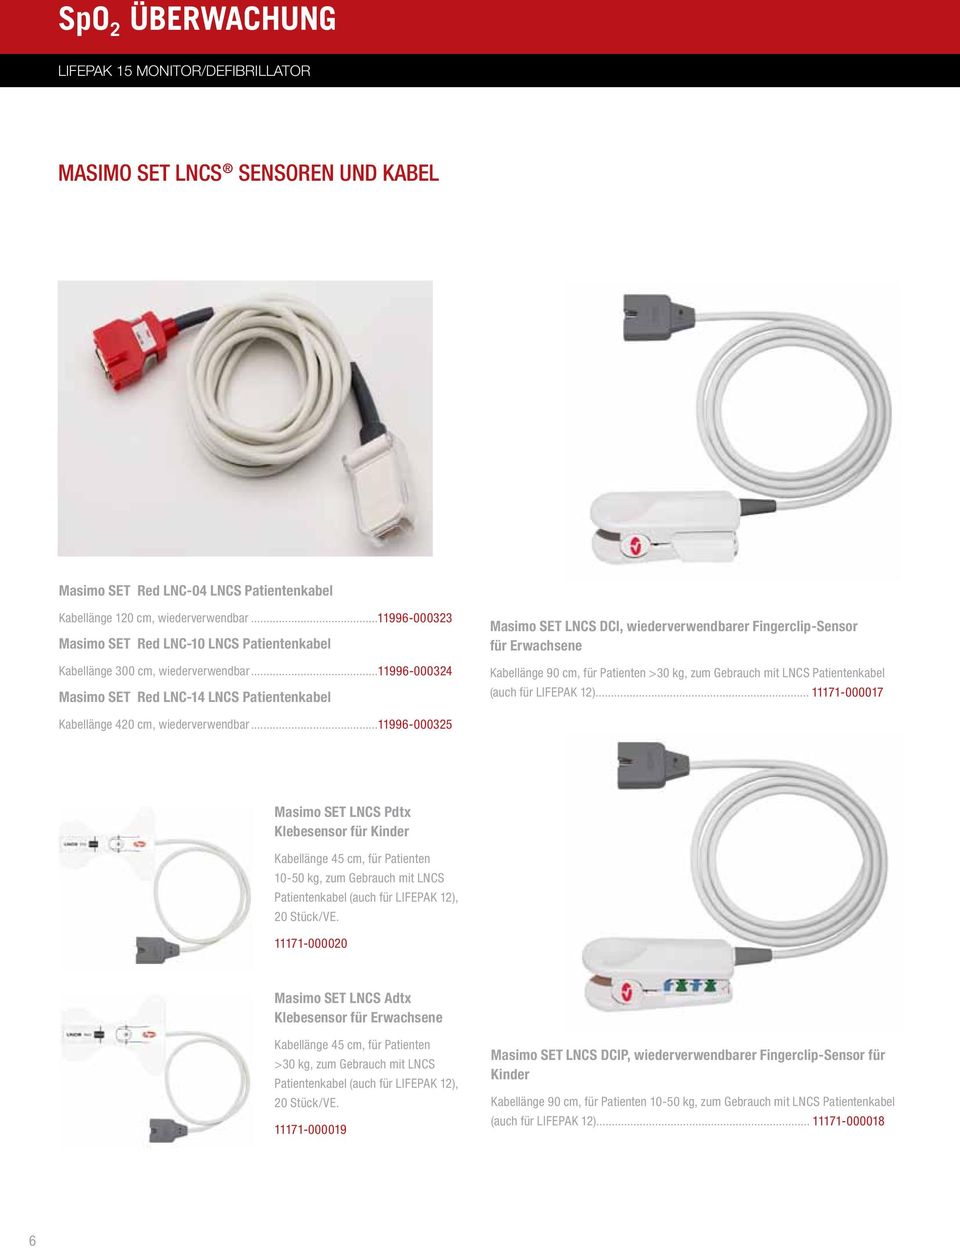 ..11996-000324 Masimo SET Red LNC-14 LNCS Patientenkabel Masimo SET LNCS DCI, wiederverwendbarer Fingerclip-Sensor für Erwachsene Kabellänge 90 cm, für Patienten >30 kg, zum Gebrauch mit LNCS